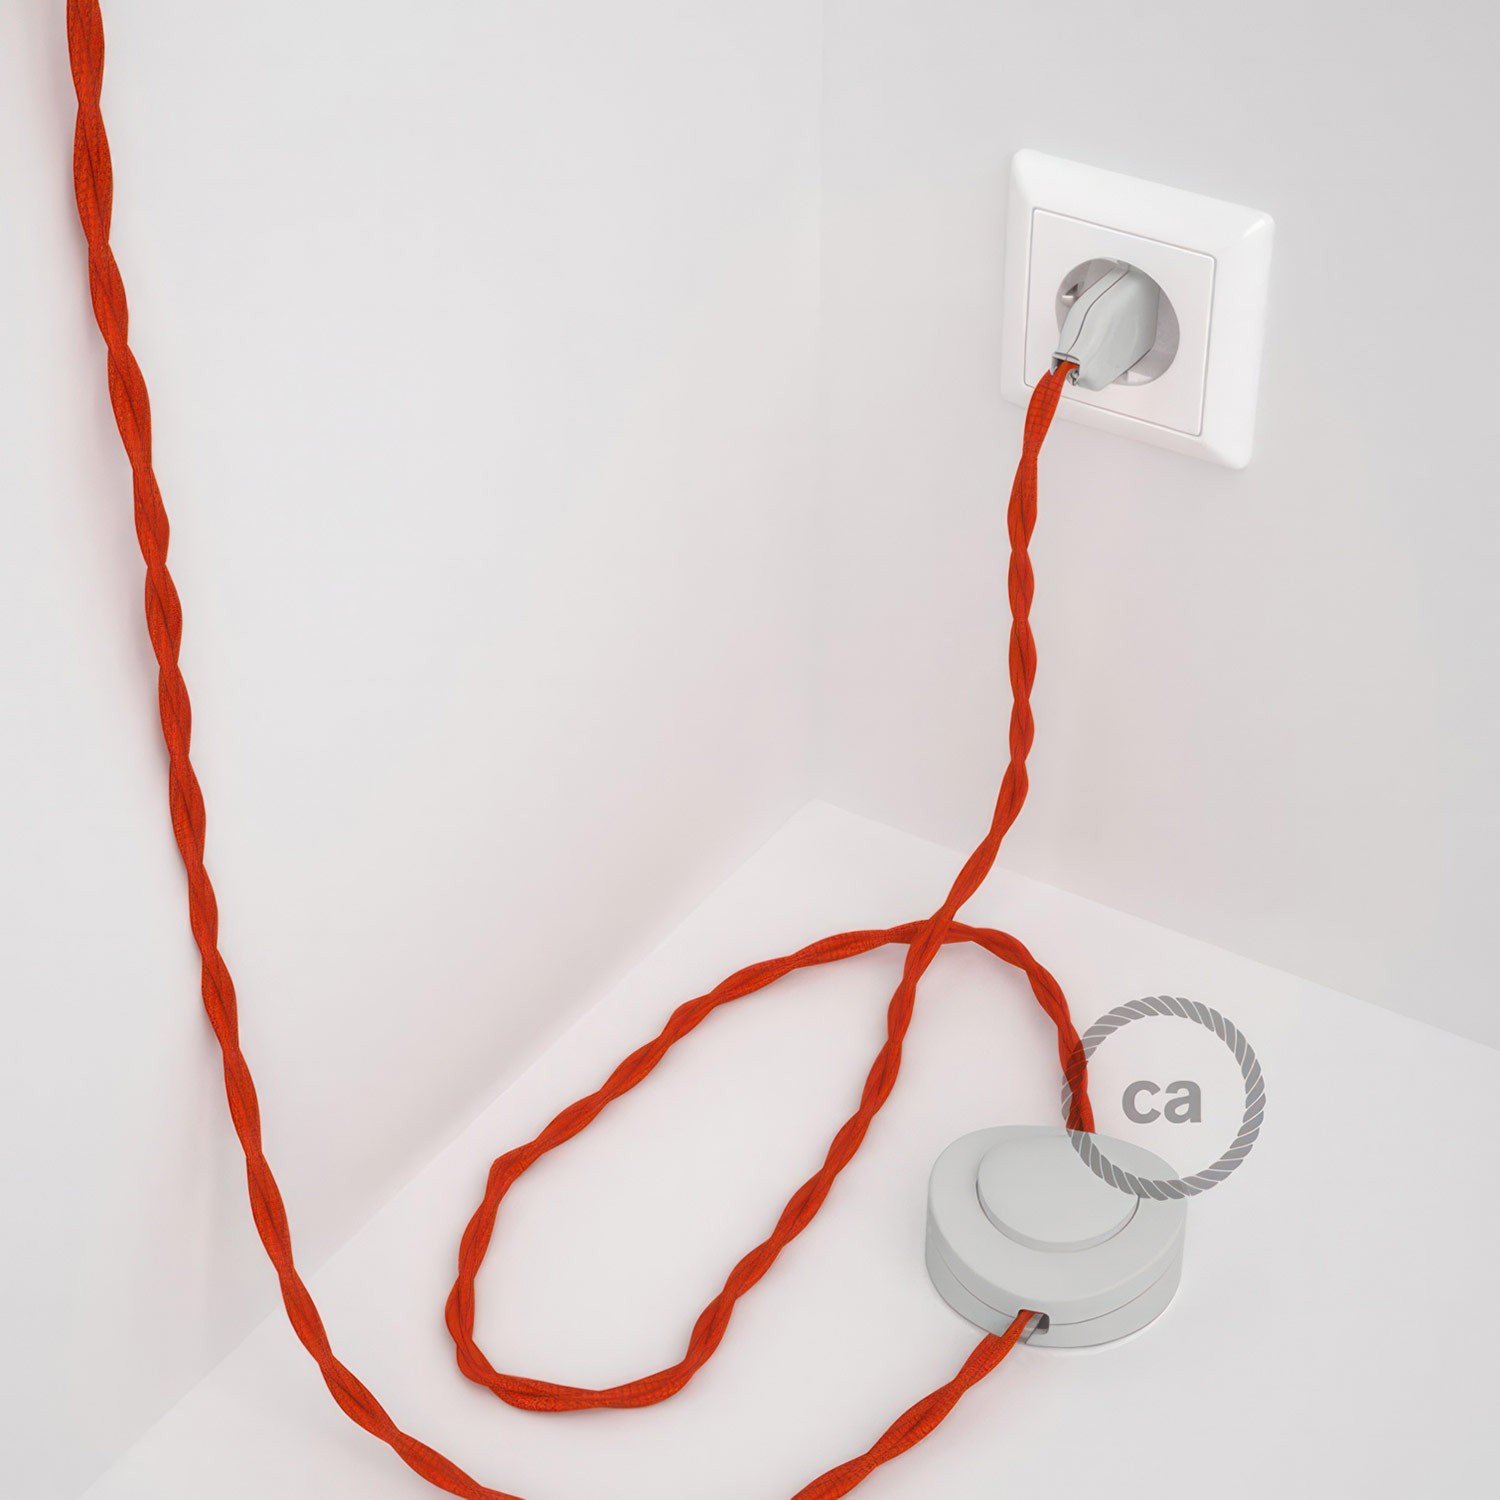 Cableado para lámpara de pie, cable TM15 Efecto Seda Naranja 3 m. Elige tu el color de la clavija y del interruptor!